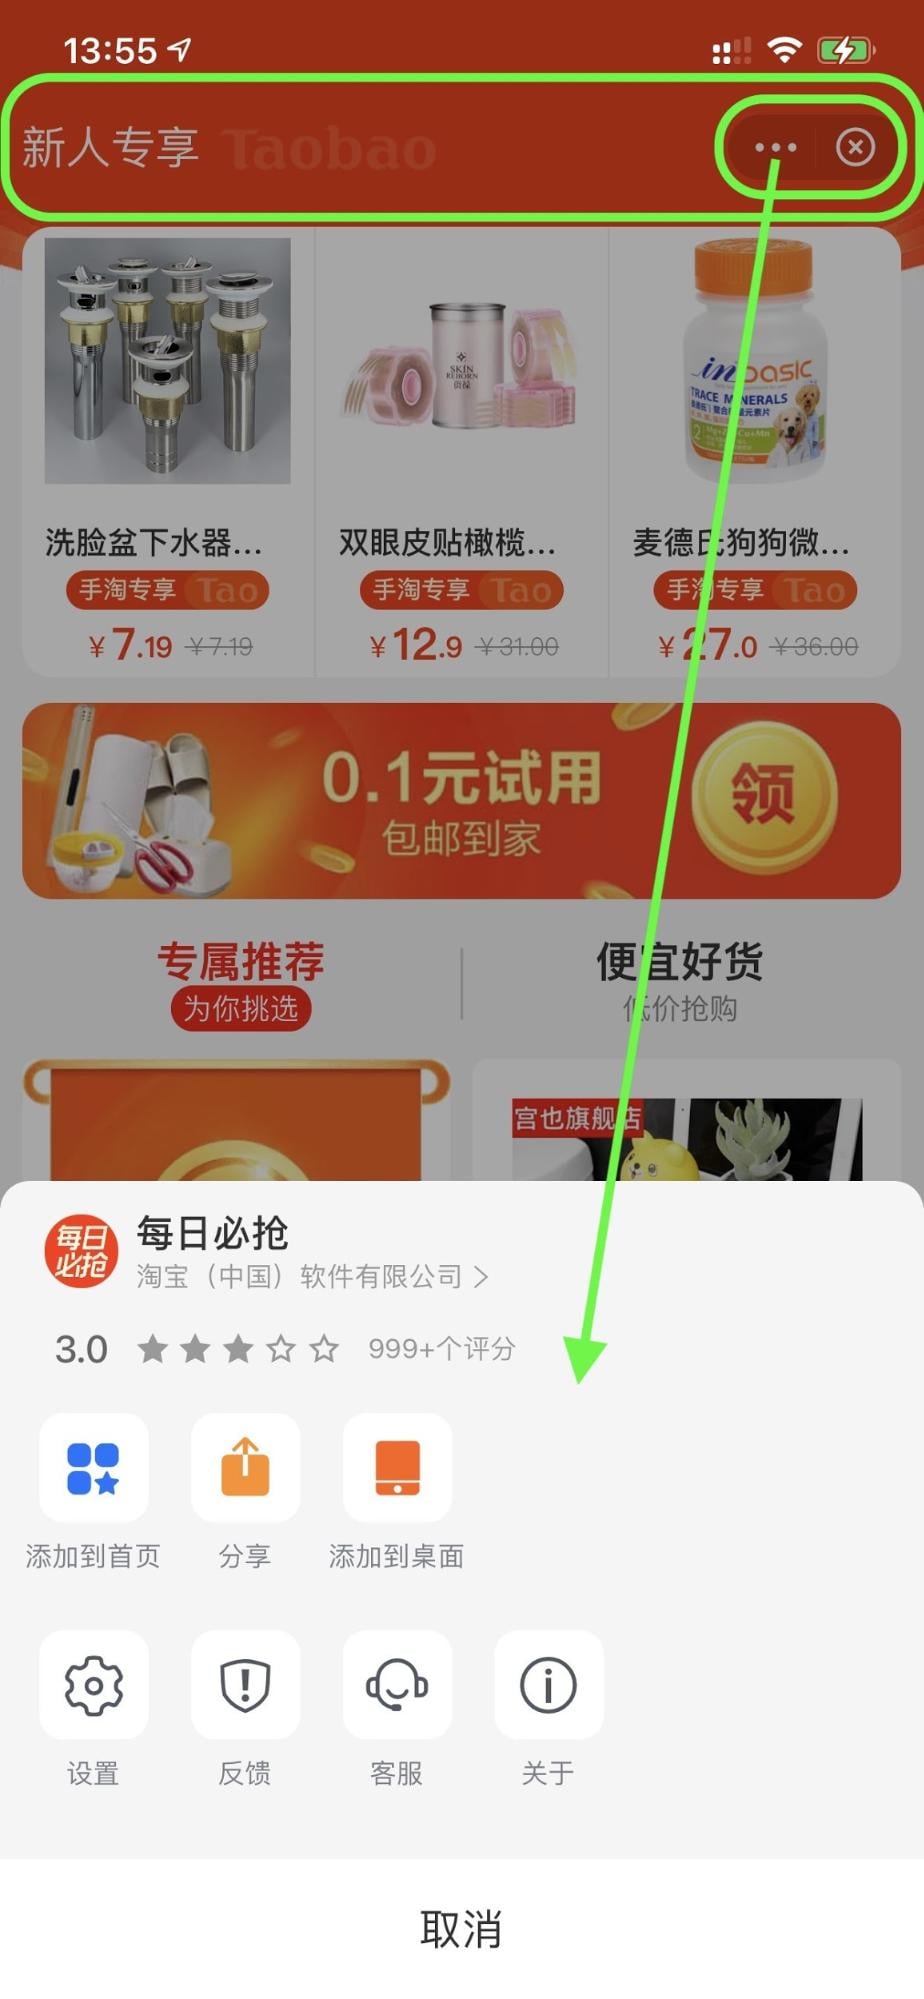 La superapp Alipay che esegue una mini app per lo shopping con barra superiore evidenziata, pulsante del menu azione e pulsante di chiusura. Si apre il menu delle azioni.